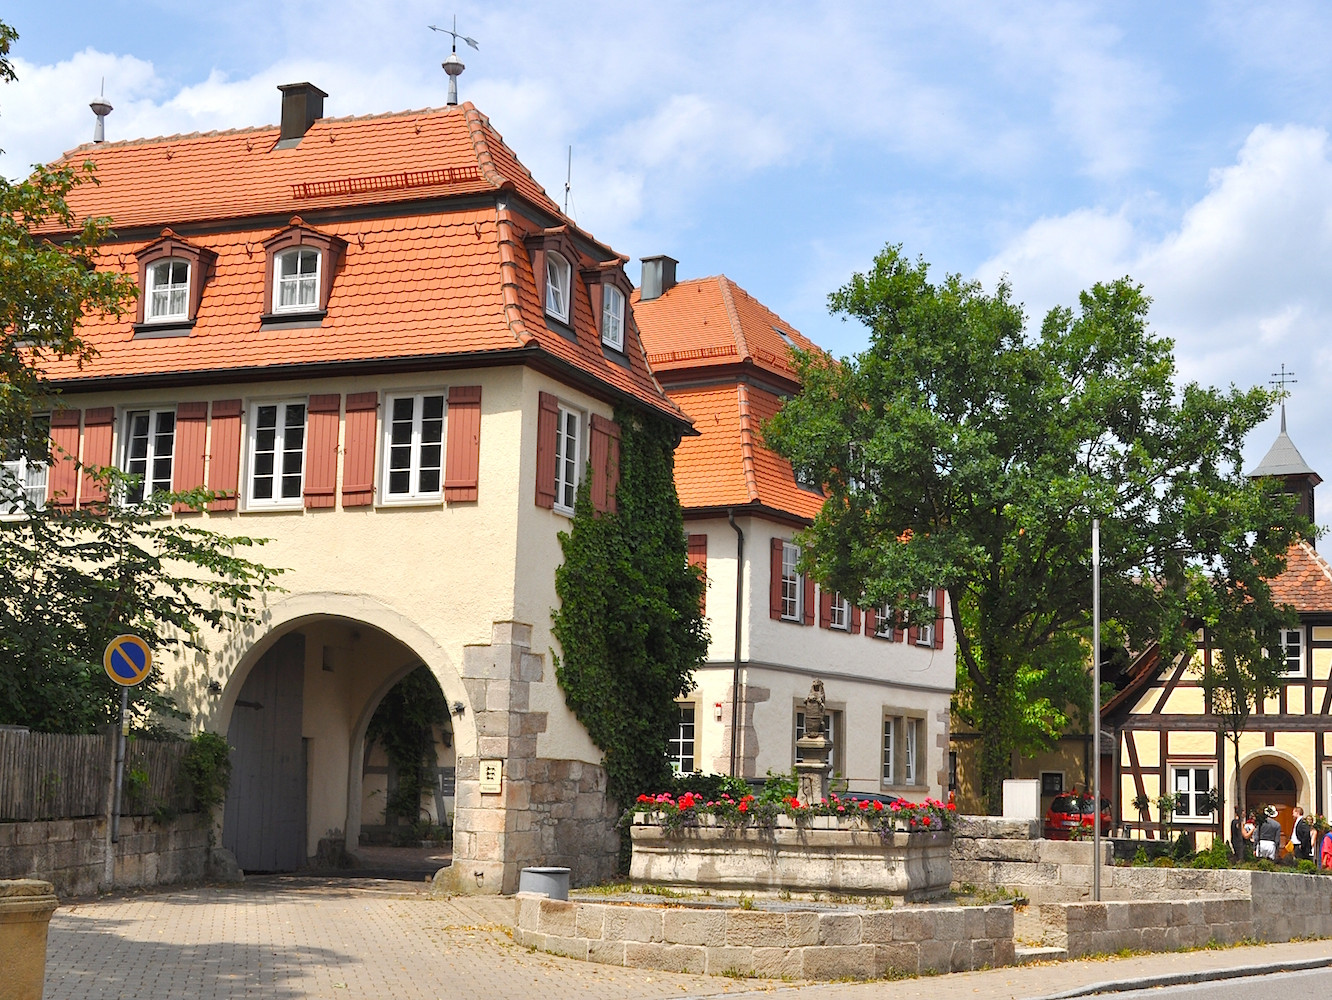 Römermuseum und Schlössle, Mainhardt